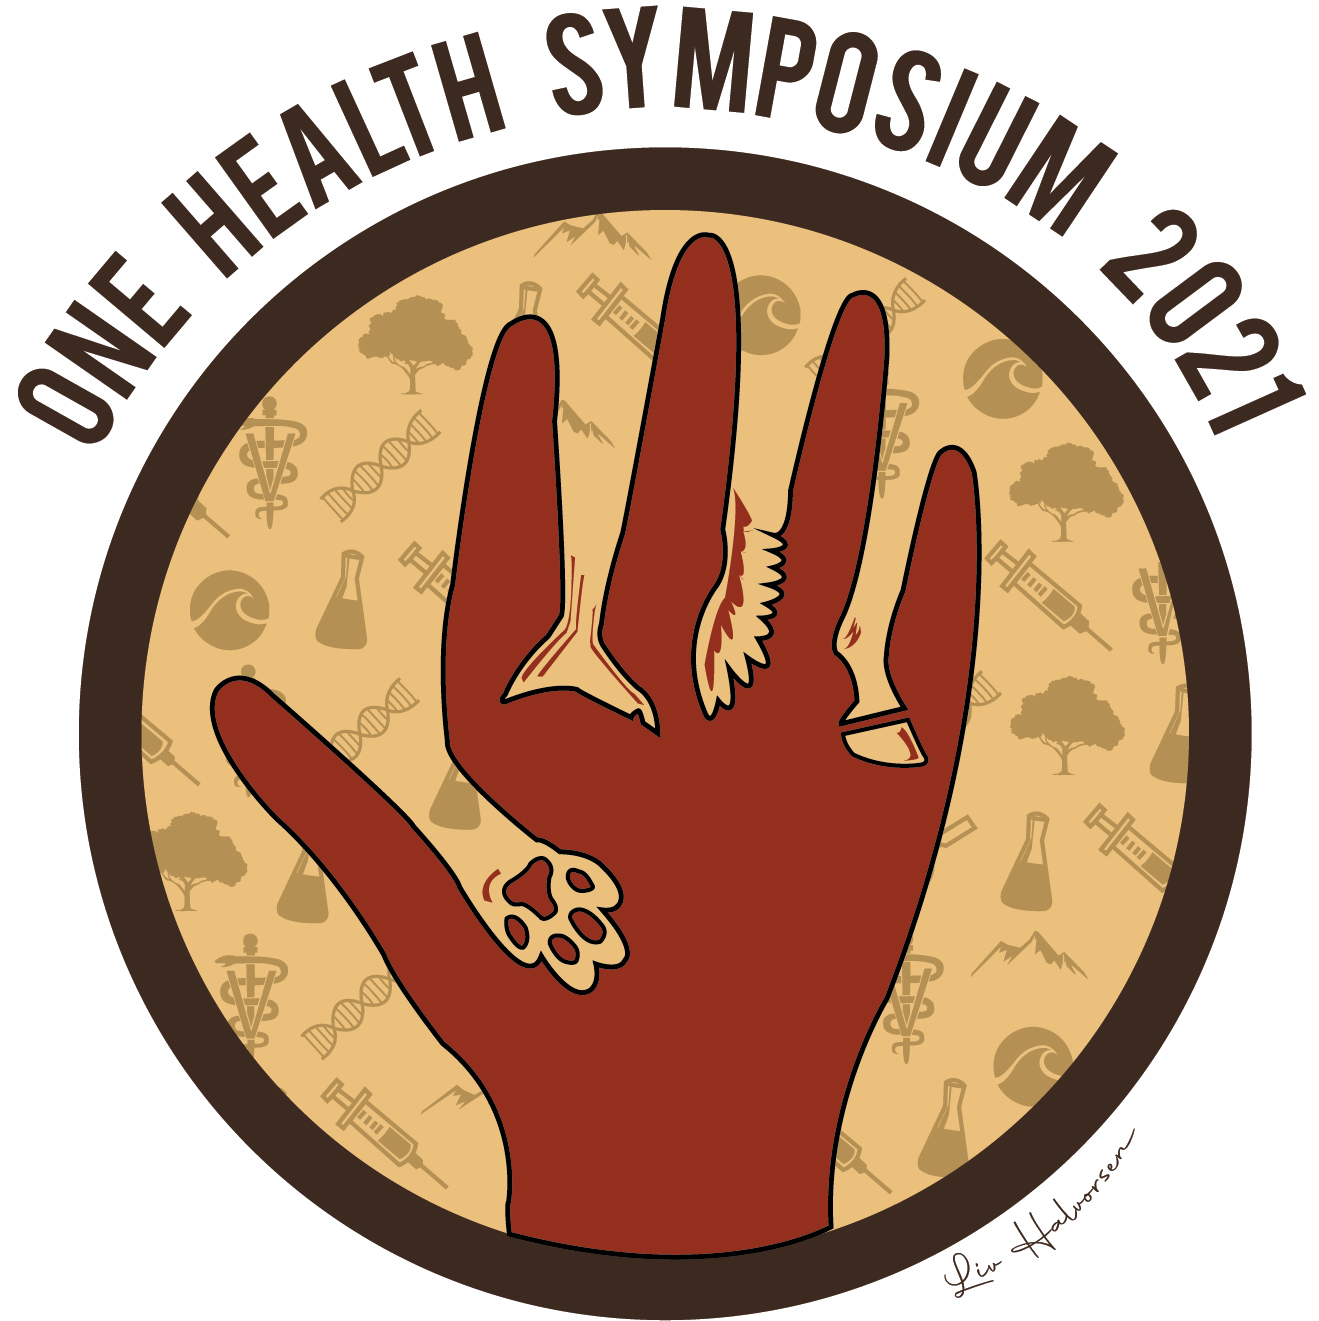 The 2021 VOHA symposium logo